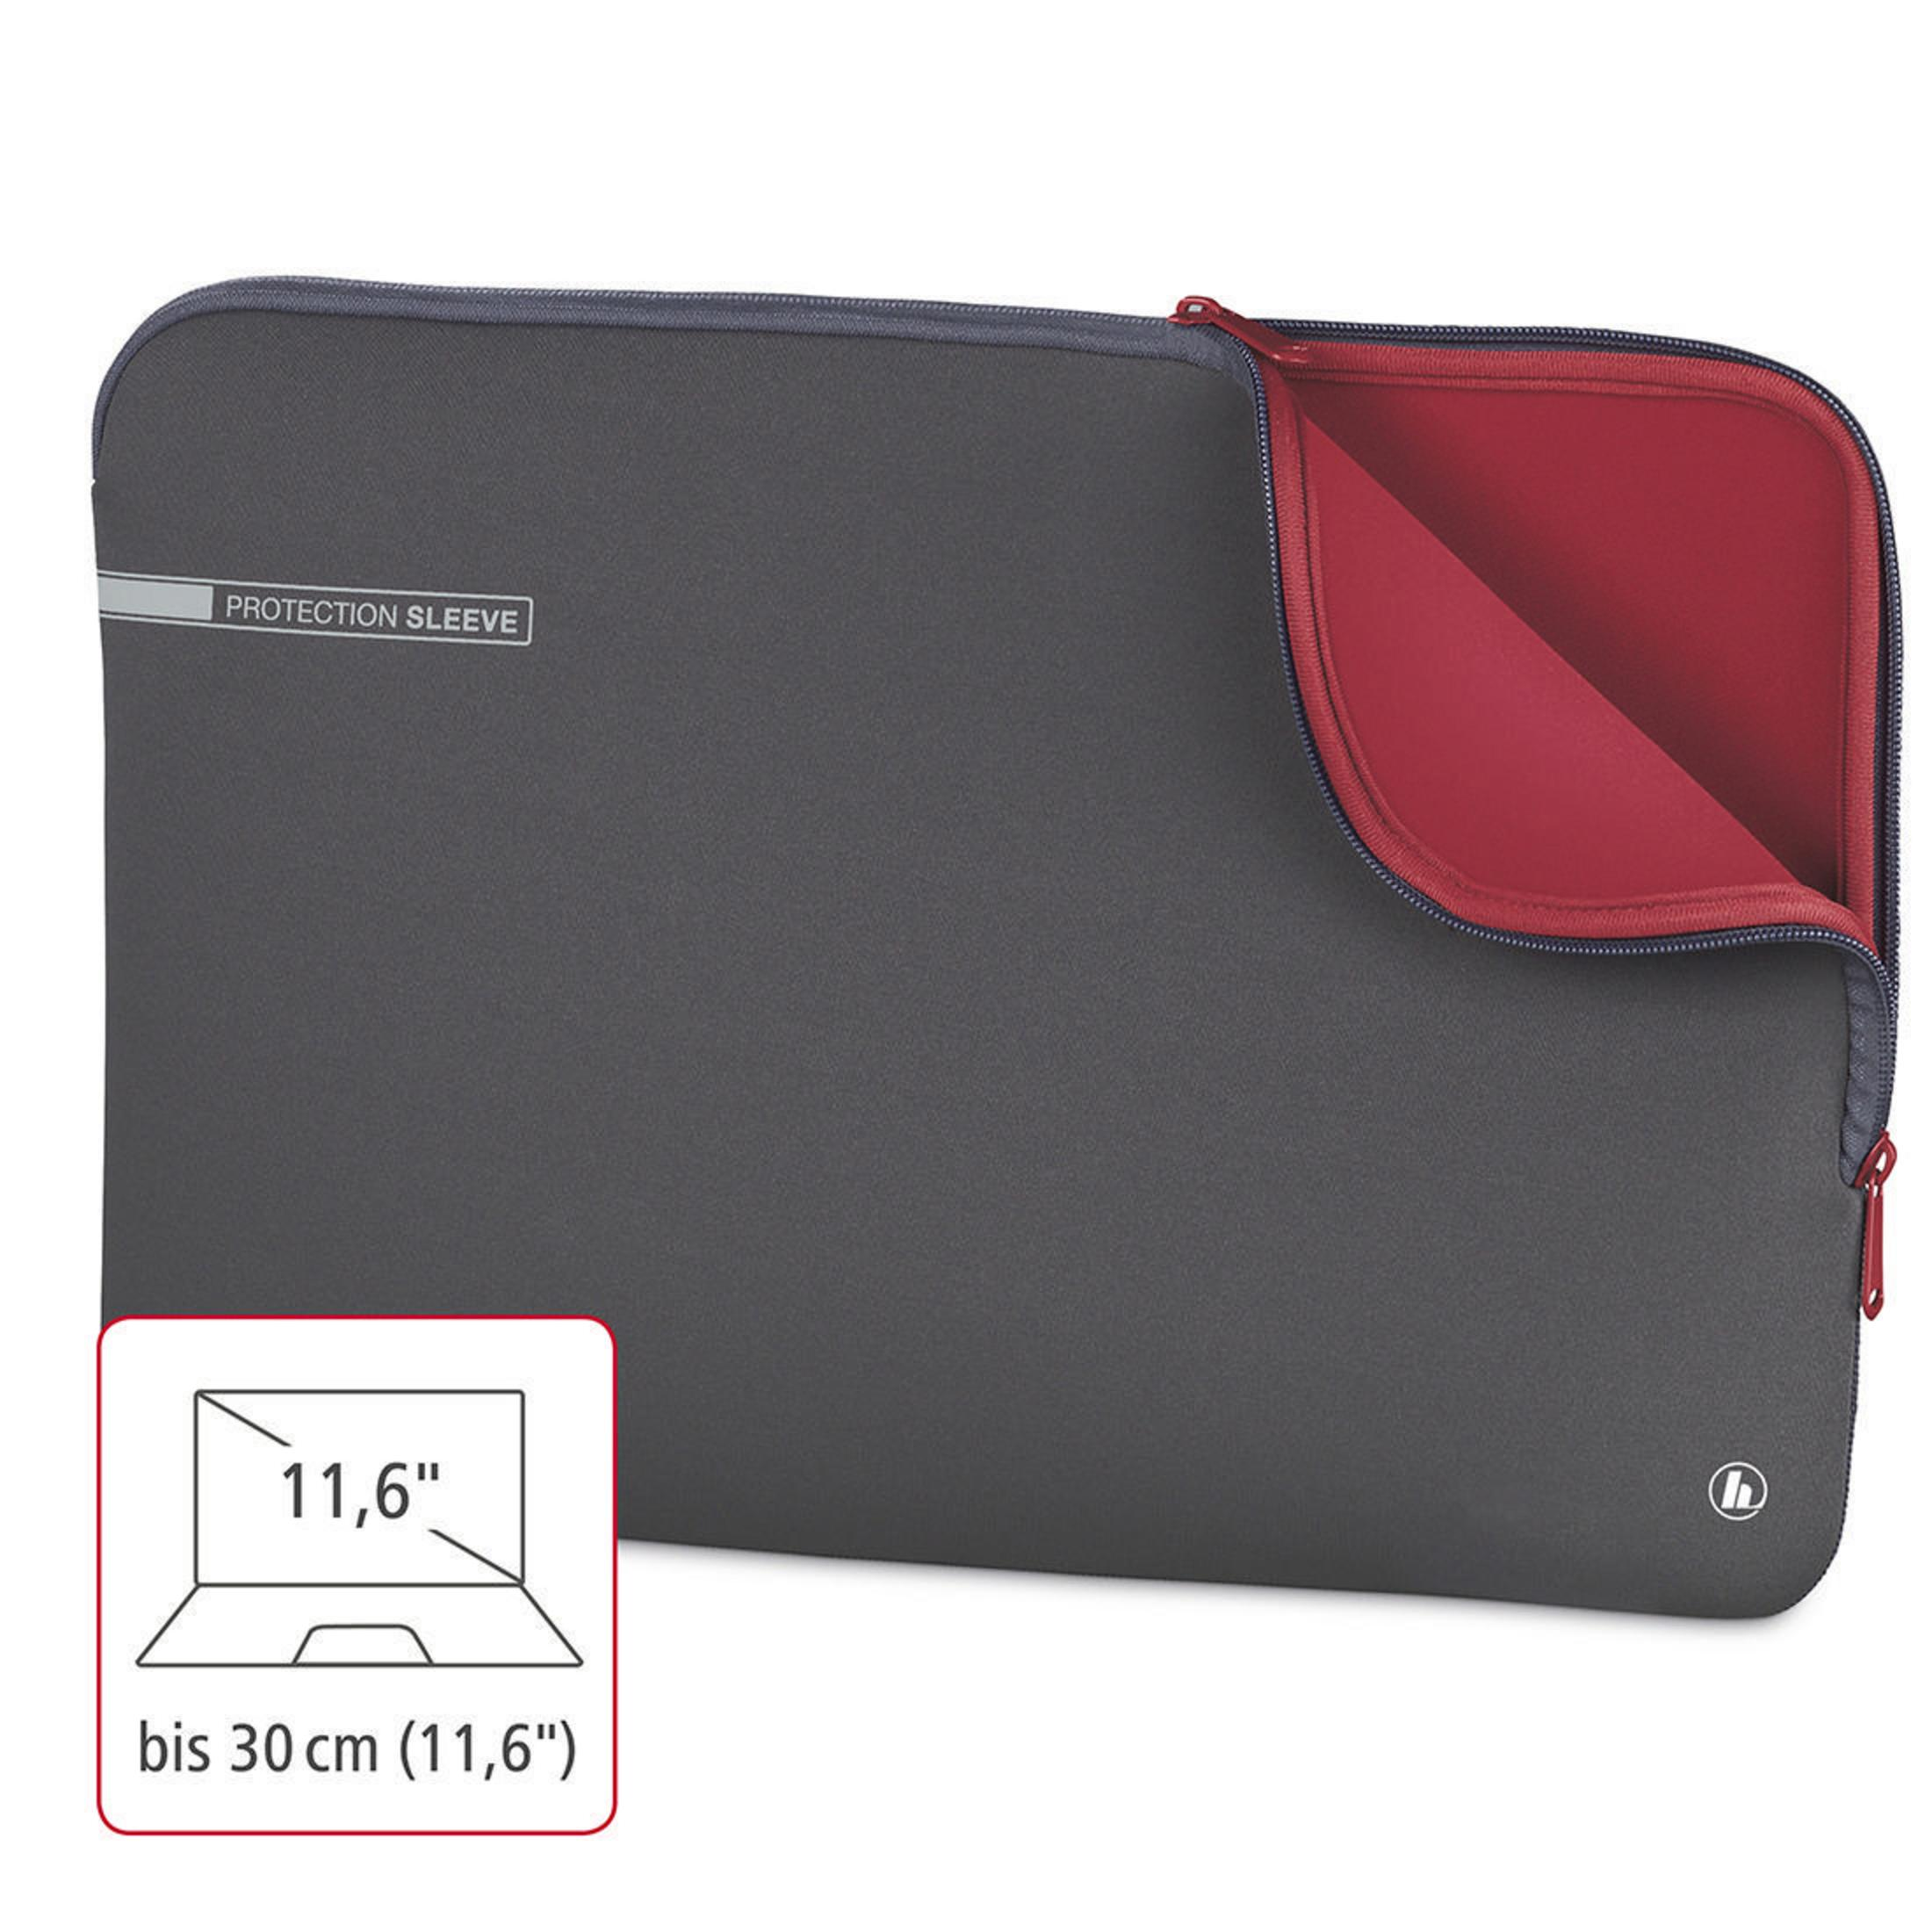 NB-SLE für Neopren, 11.6 GR 101548 Sleeve NEO Grau/Rot Universal HAMA Notebooktasche